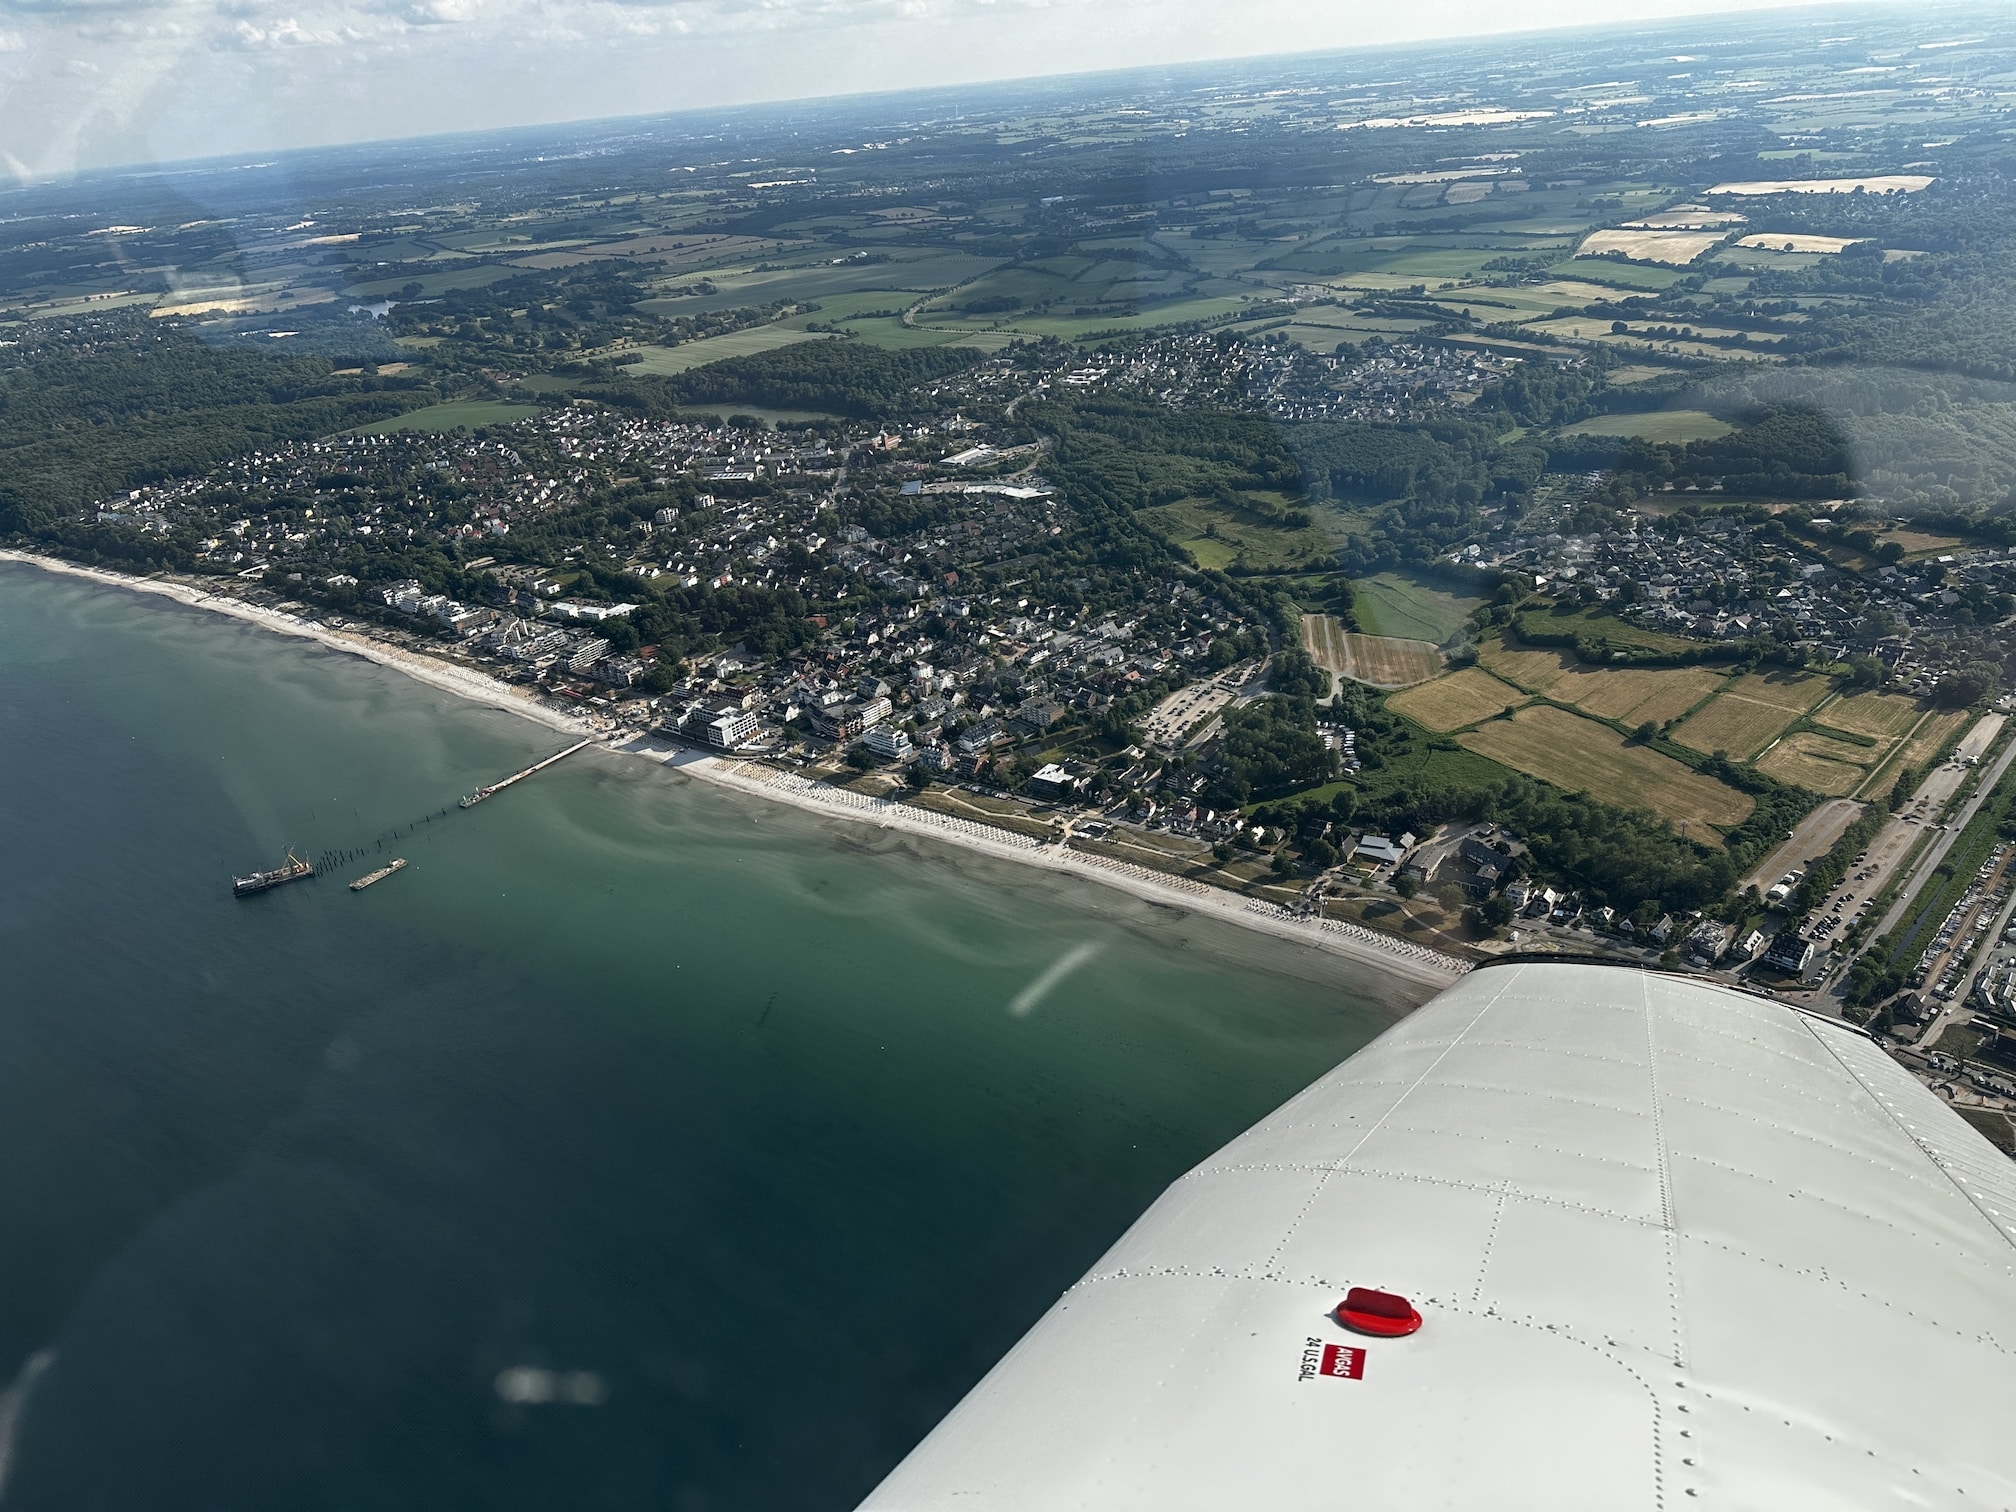 Rundflug über Grömitz und Timmendorfer Strand mit Tragfläche einer Piper PA28. Das Wasser der Bucht ist blau-grün.